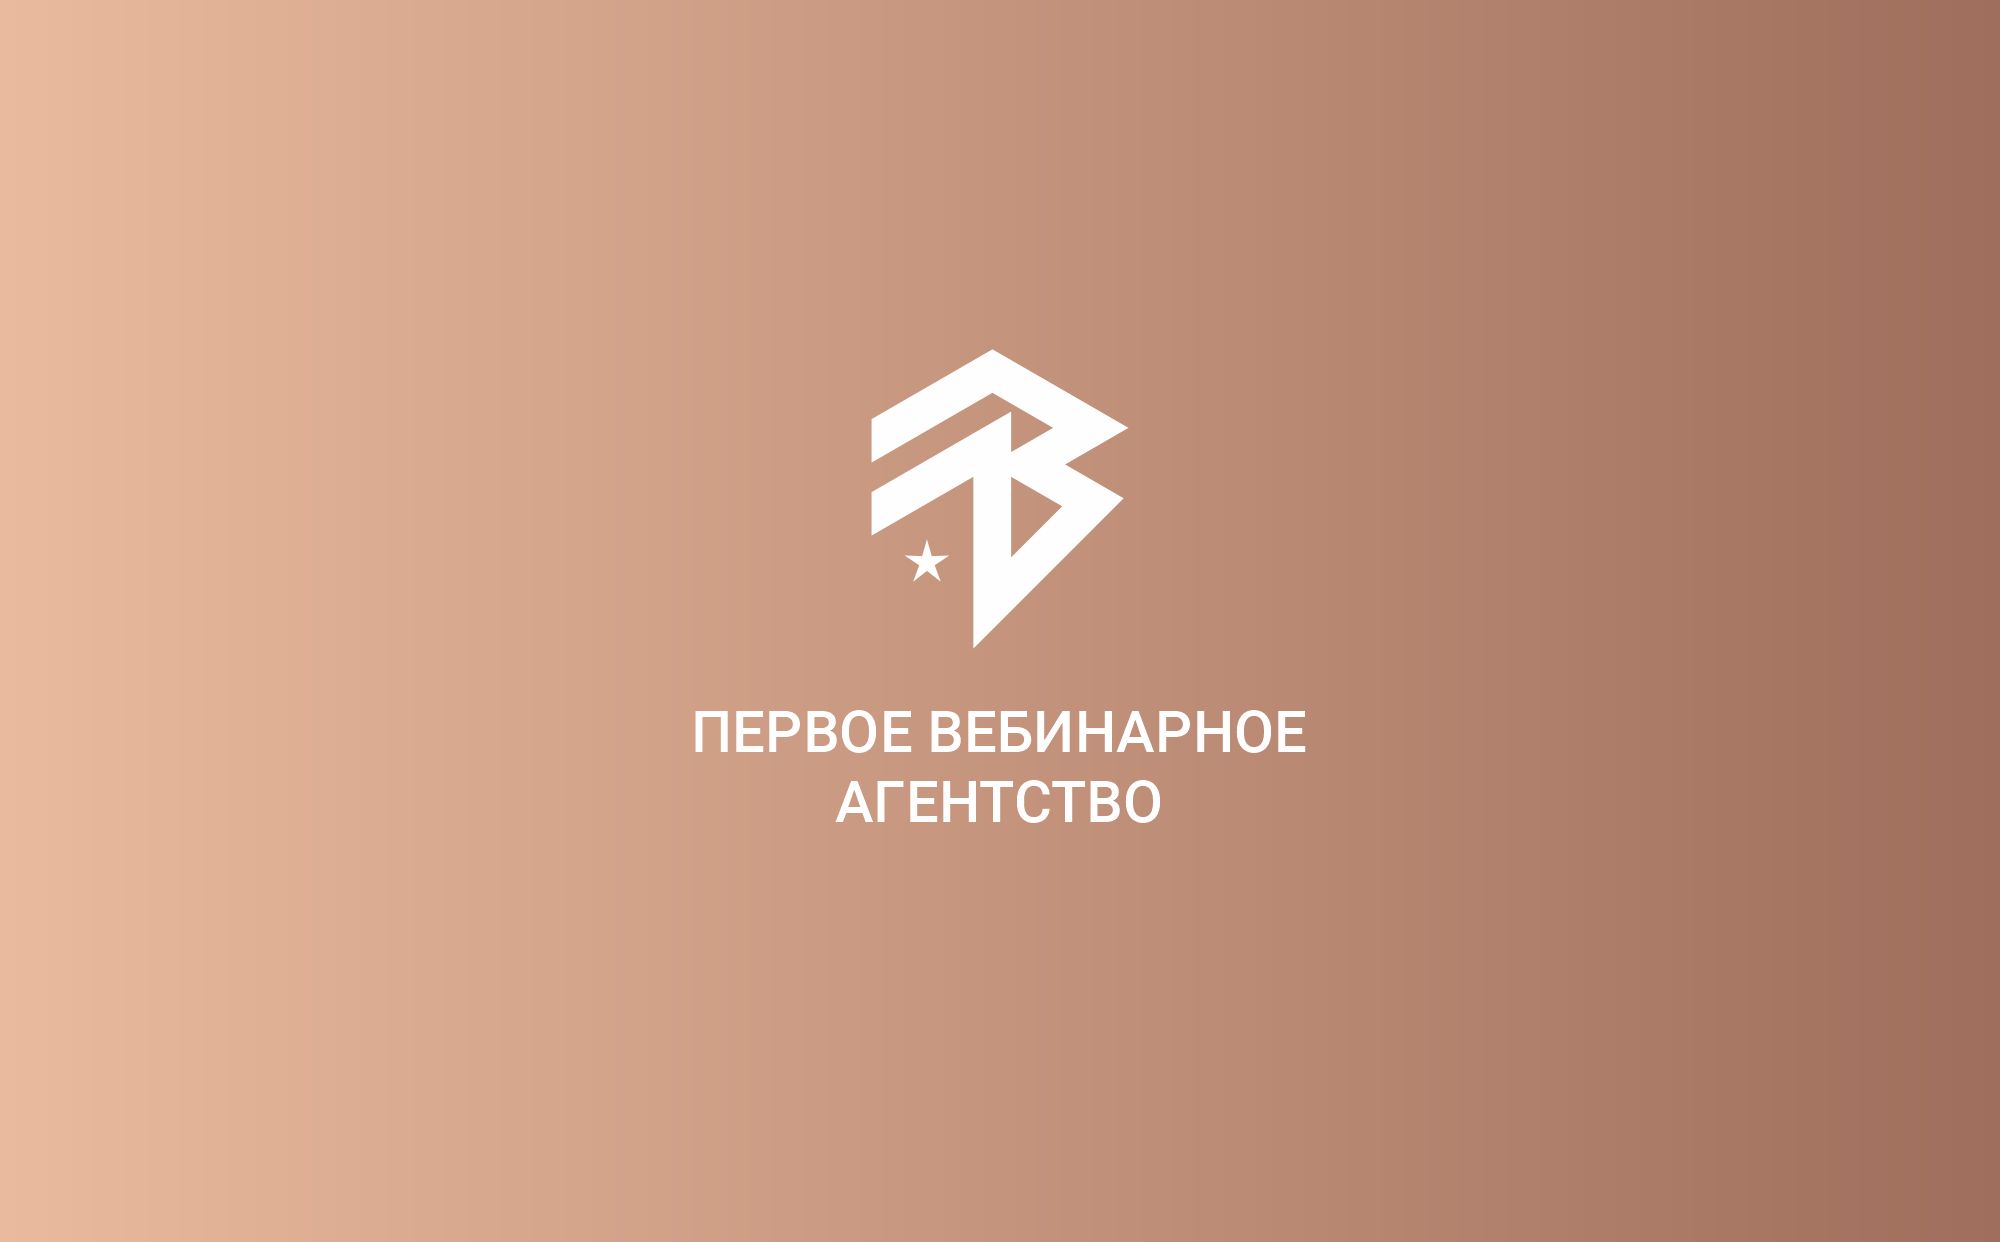 Лого и фирменный стиль для Первое вебинарное агентство  - дизайнер Zero-2606